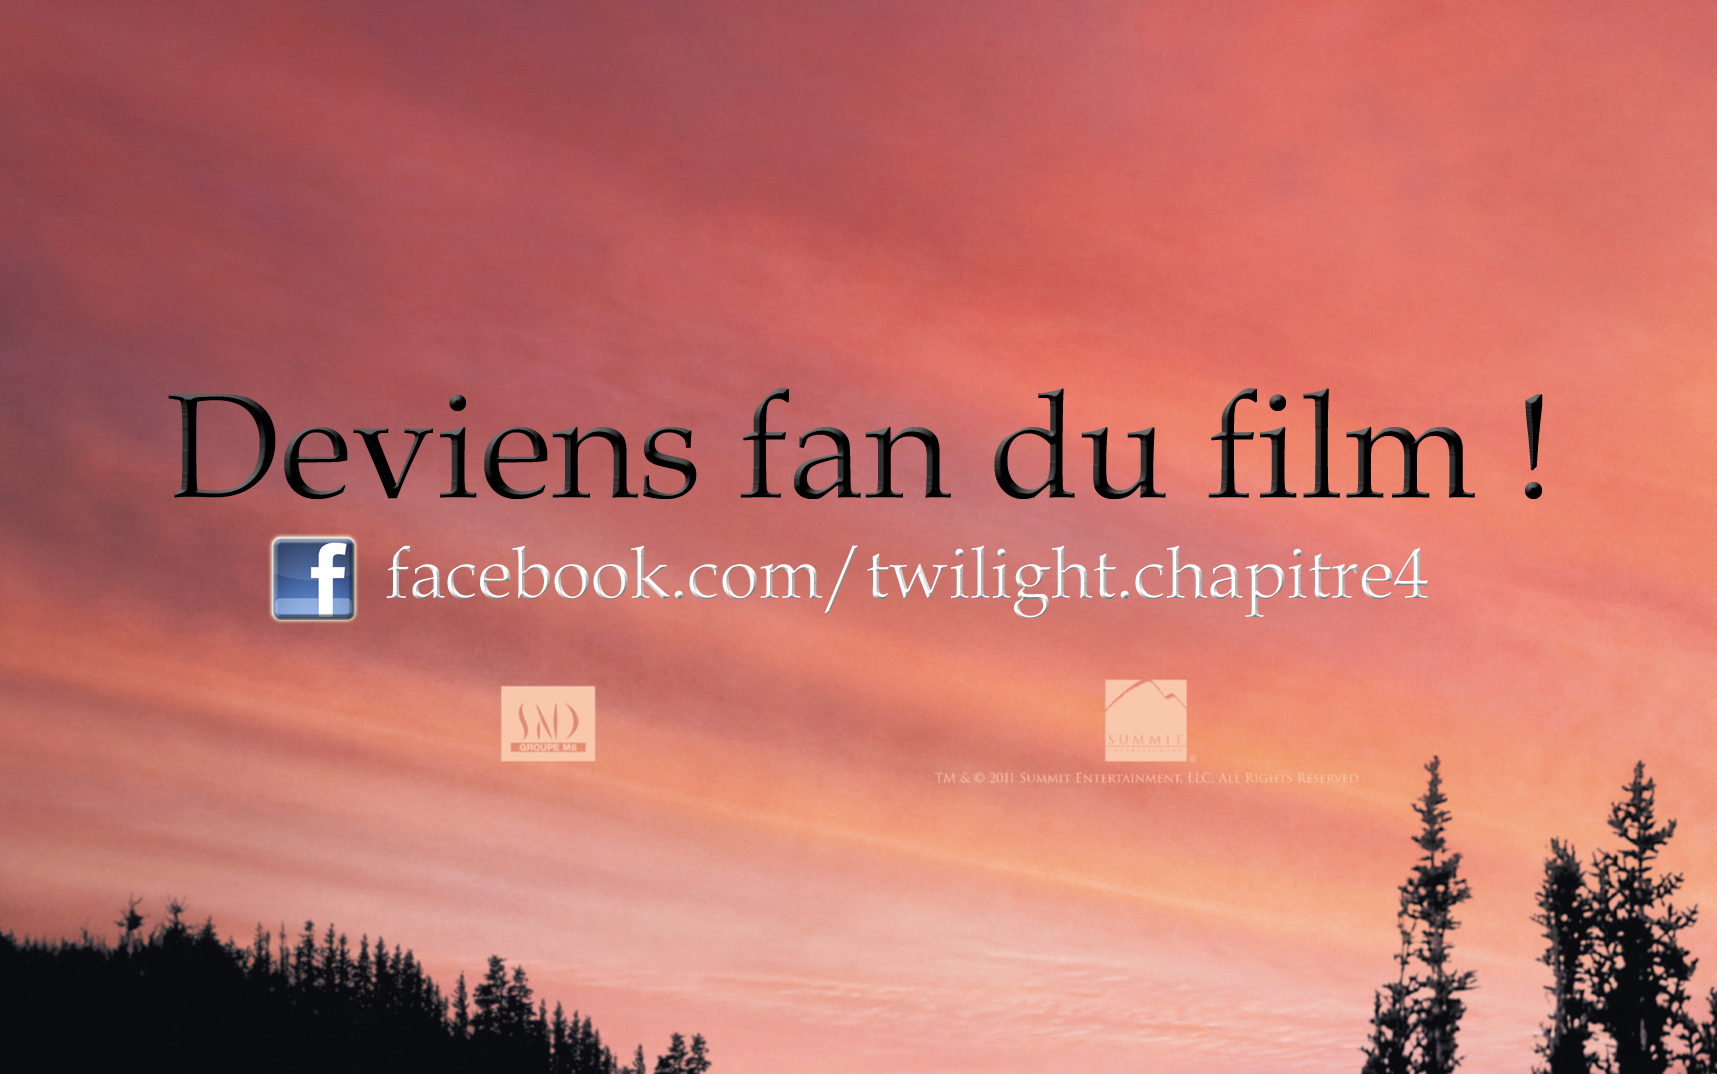 [Breaking Dawn] La page officielle facebook française a 6 000 fans !